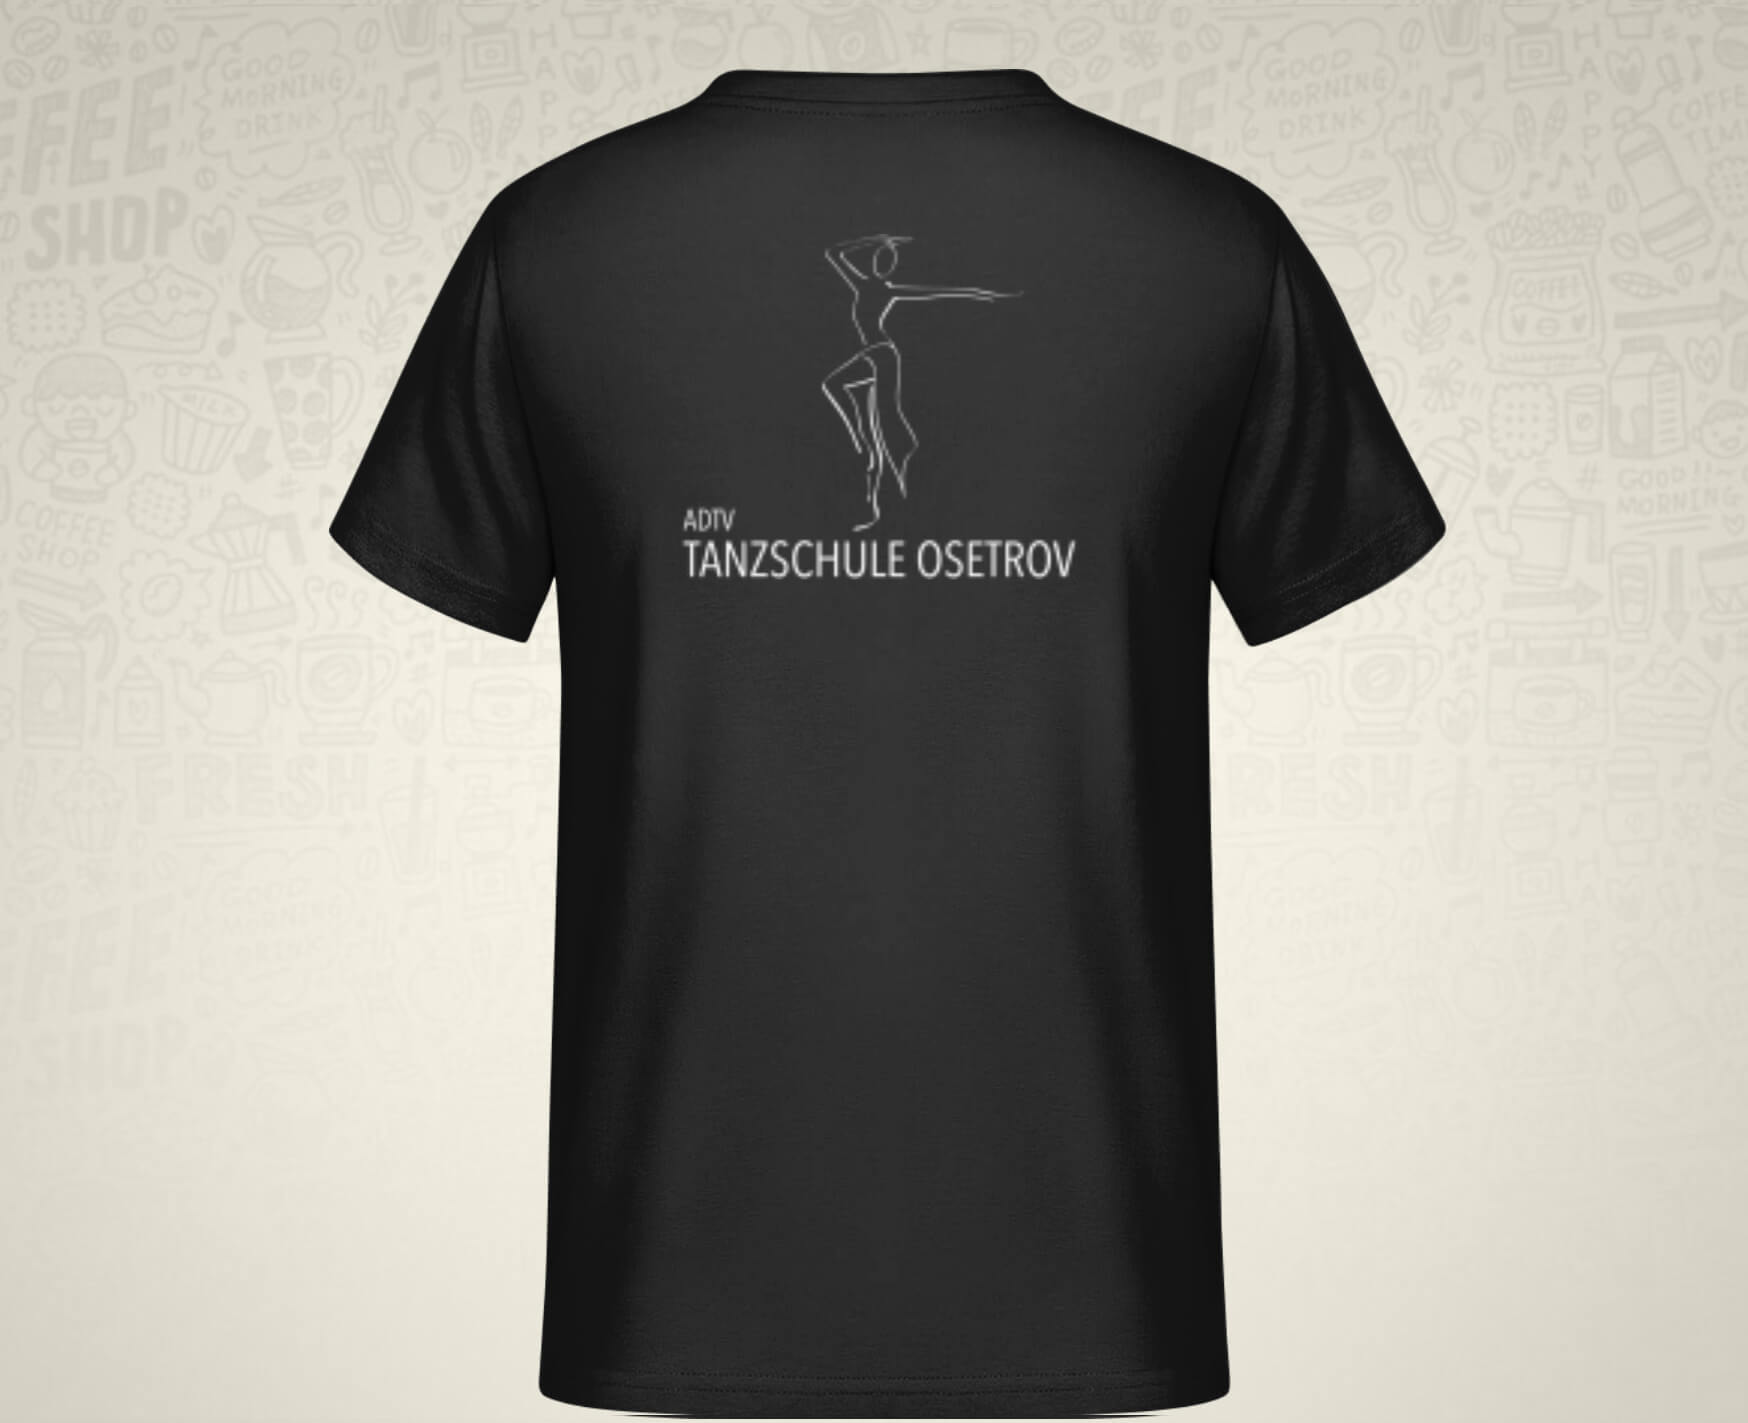 #TanzenMachtGlücklich T-Shirt für Männer in schwarz